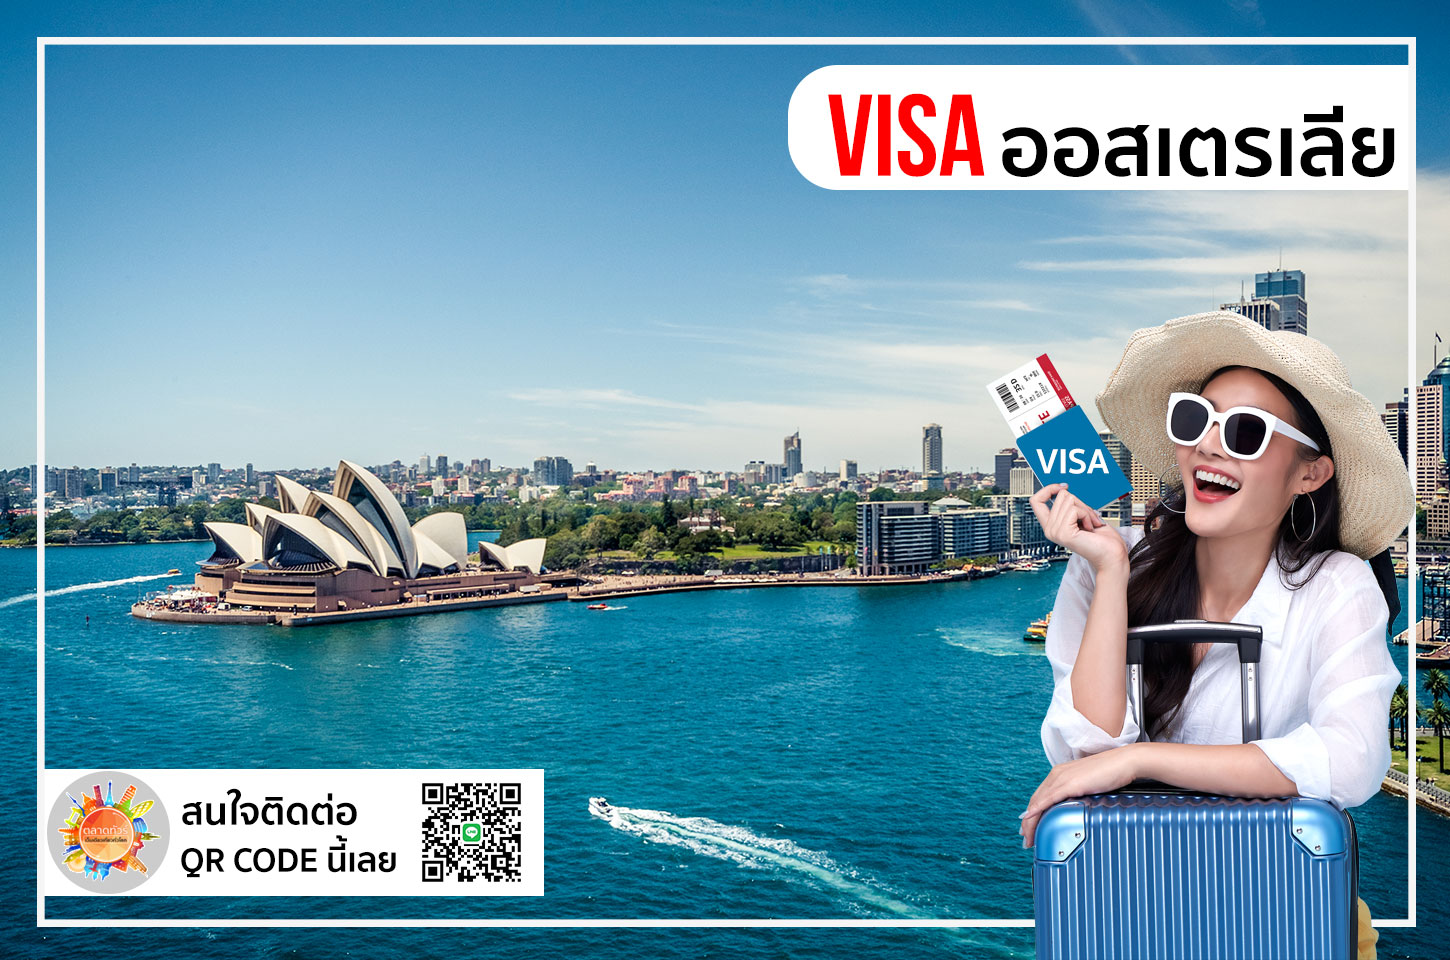 บริการยื่นวีซ่าออสเตรเลีย Australia Visa เราบริการรวดเร็ว ทันใจ ราคาย่อมเยาว์